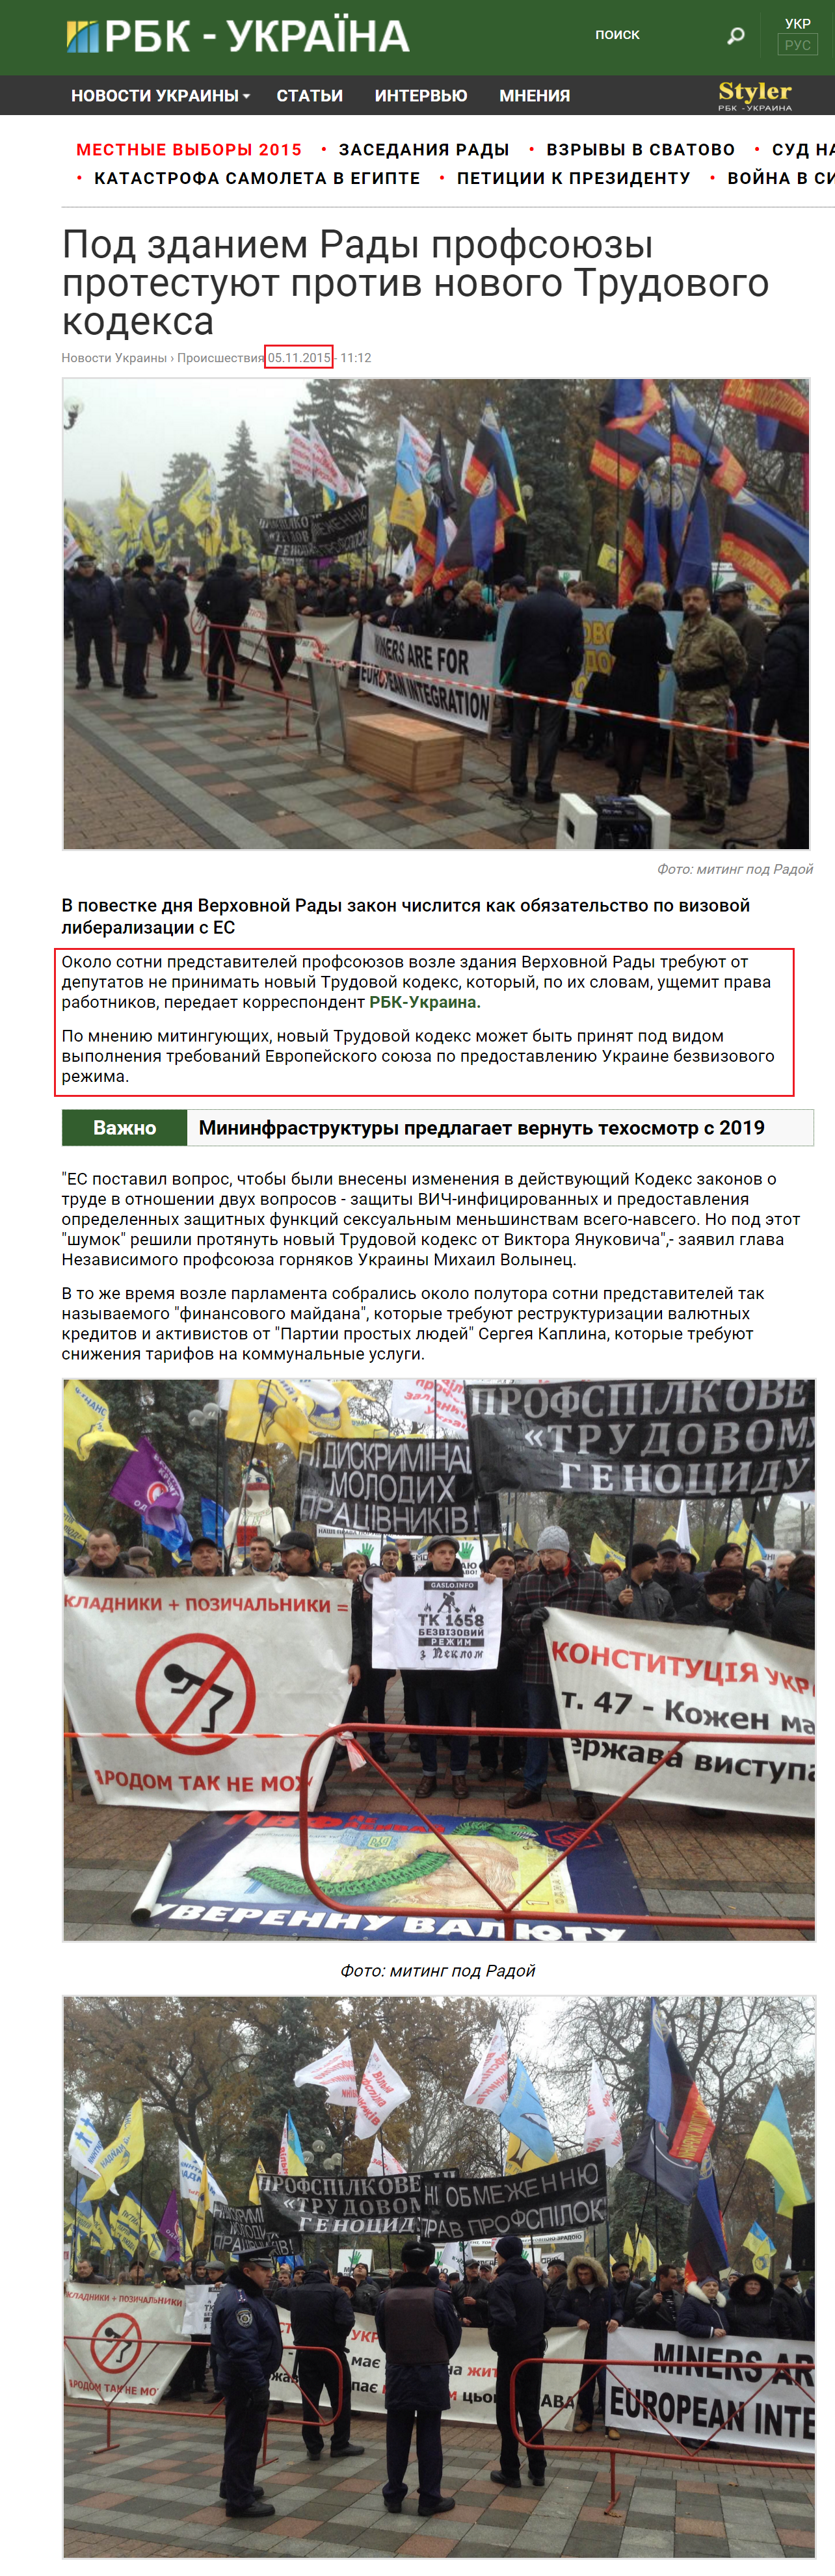 http://www.rbc.ua/rus/news/zdaniem-rady-profsoyuzy-protestuyut-protiv-1446714534.html